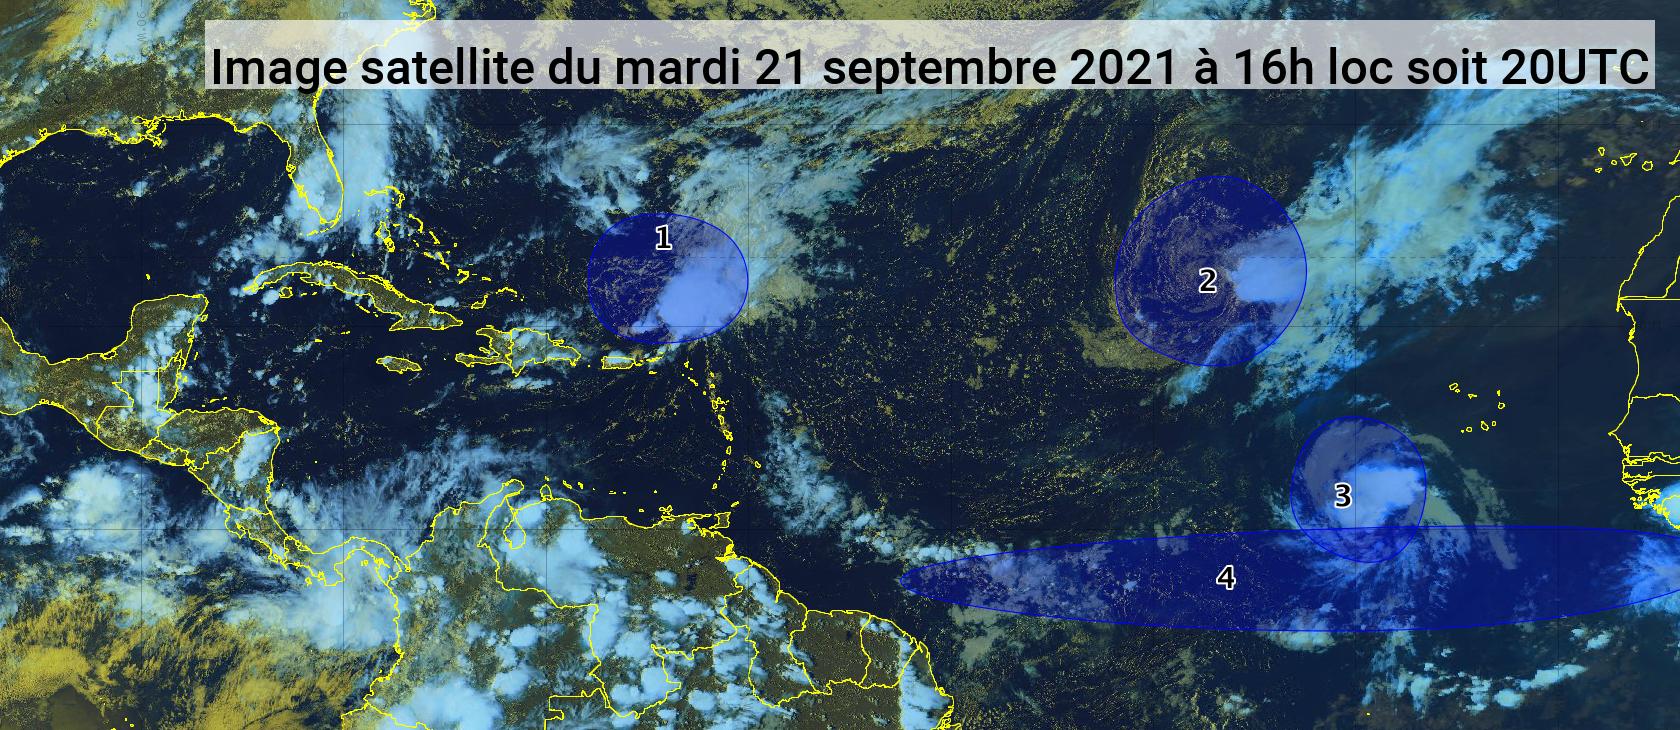     Deux phénomènes cycloniques et deux ondes tropicales dans l'Atlantique (bulletin du 21/09/21) 

